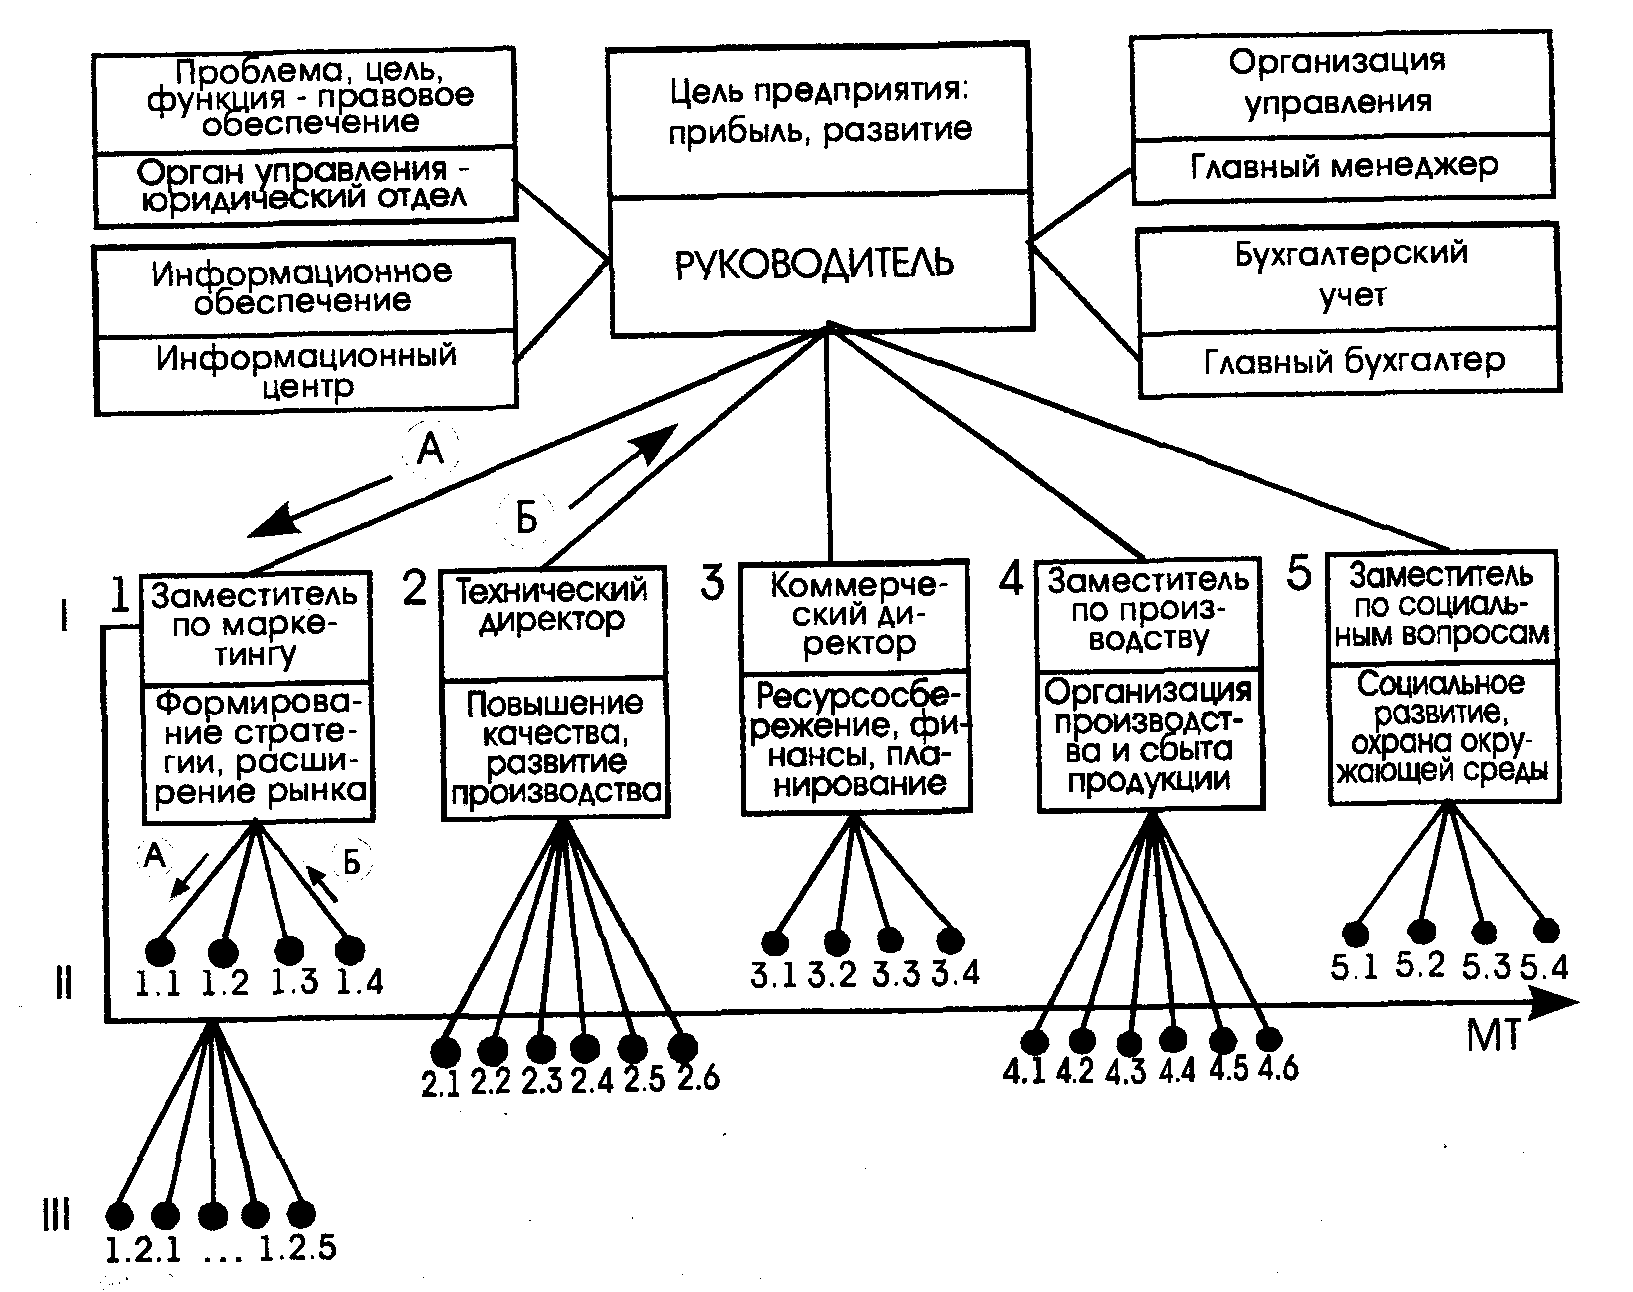 Организация ее цели и структура. Проблемно-целевая структура управления схема. Иерархия дерева целей организации. Структура целей организации схема. Иерархия целей организации в менеджменте.